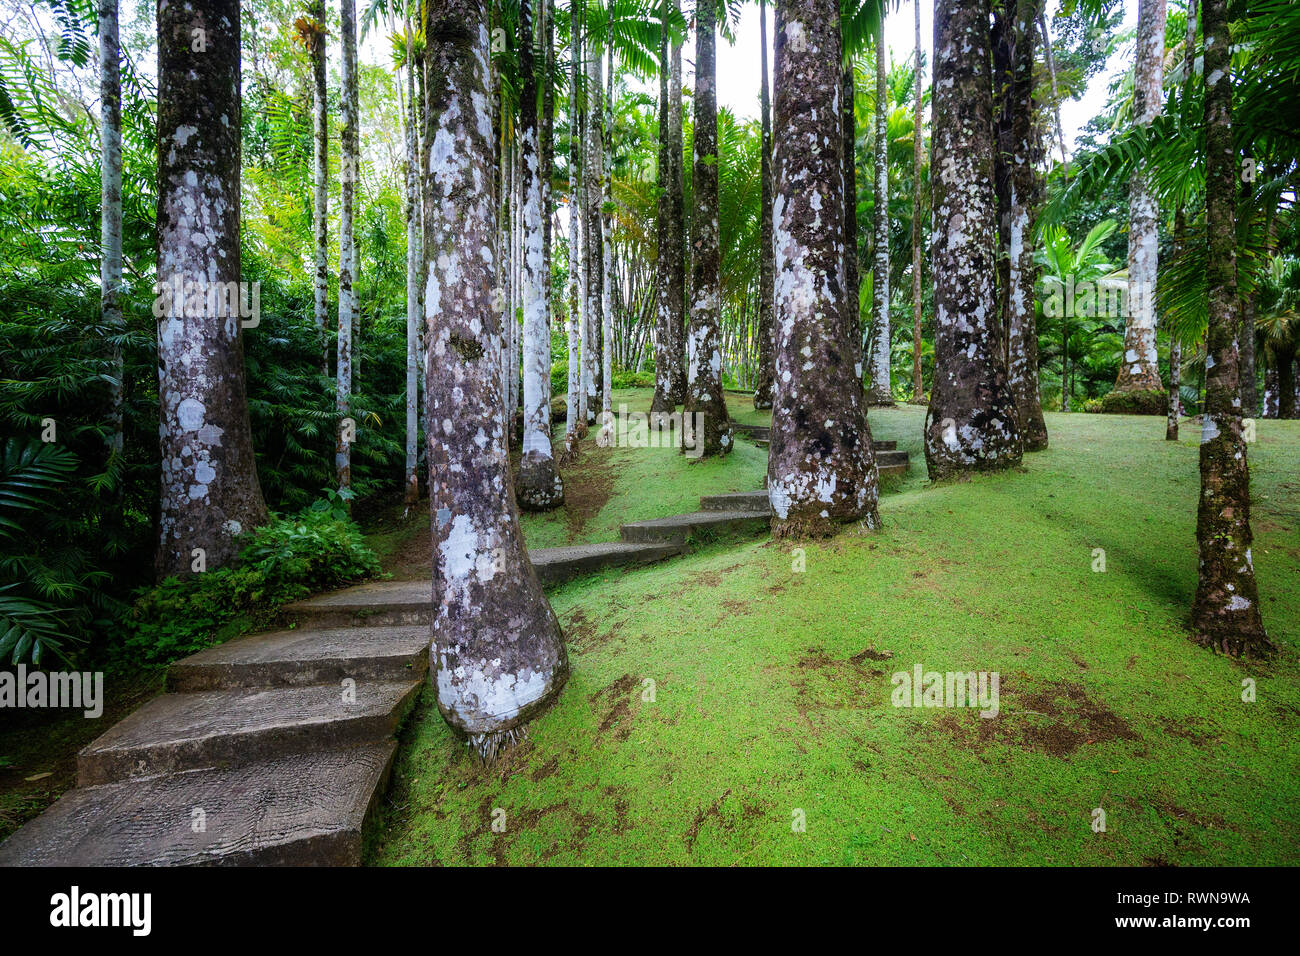 Fort-de-France, Martinique - 15 janvier 2018 : le jardin de Balata. Le Balata est un jardin botanique situé sur la Route de Balata environ 10 km Banque D'Images